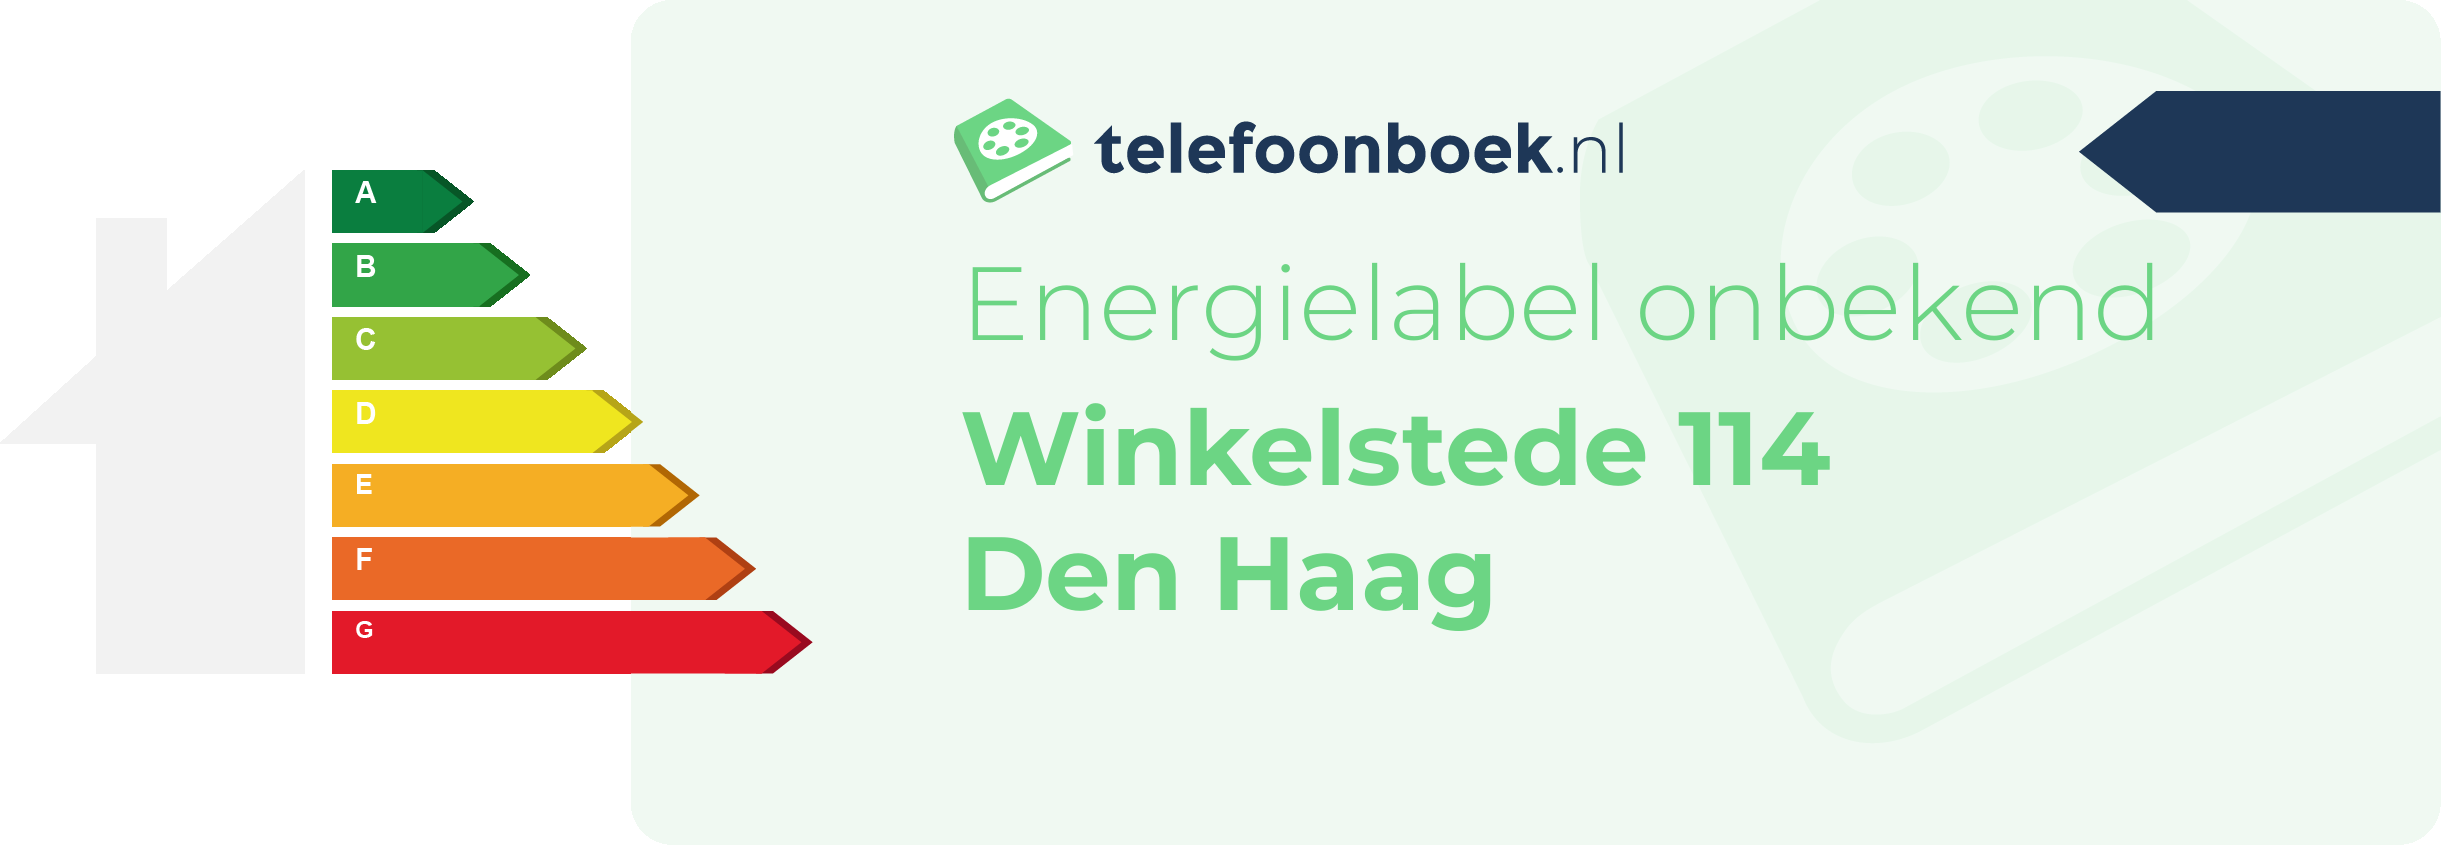 Energielabel Winkelstede 114 Den Haag